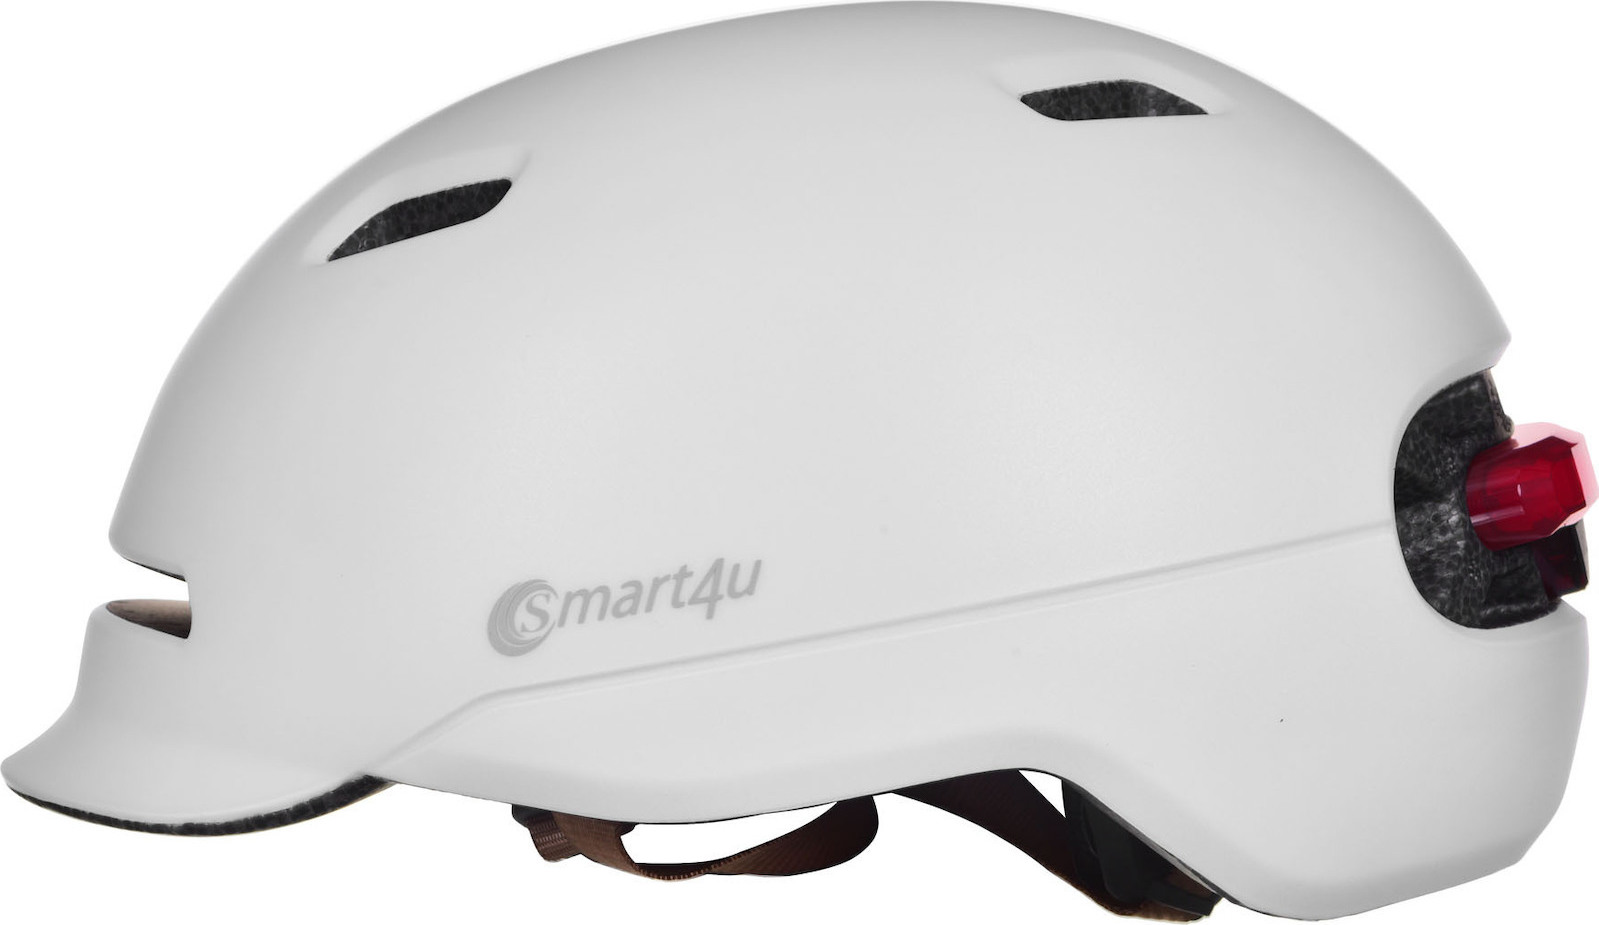 Smart4u LIV-0SH50L-4301 Λευκό